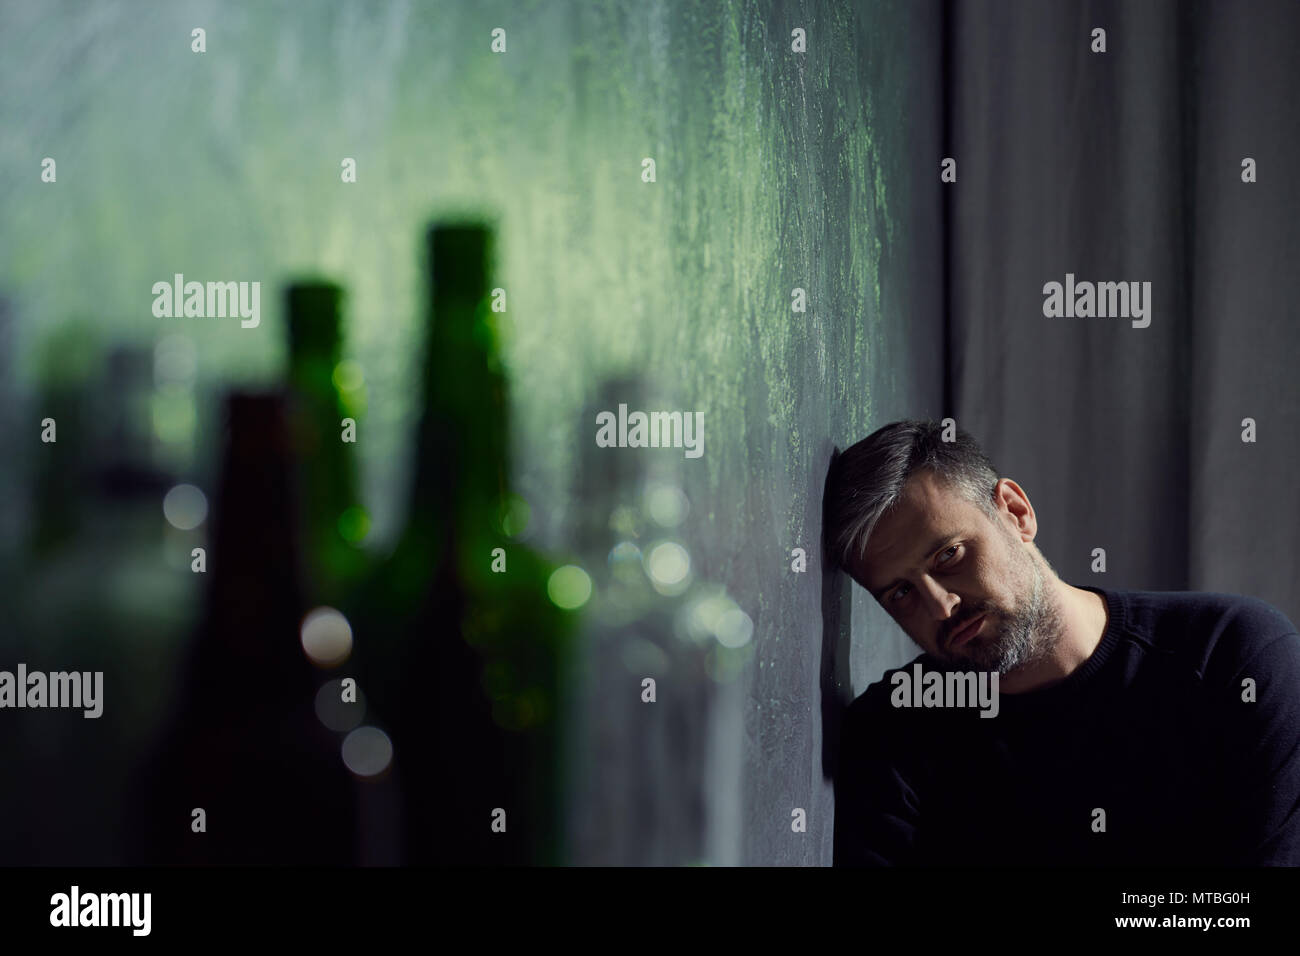 L'homme souffrant de dépression avec des bouteilles d'alcool vides Banque D'Images